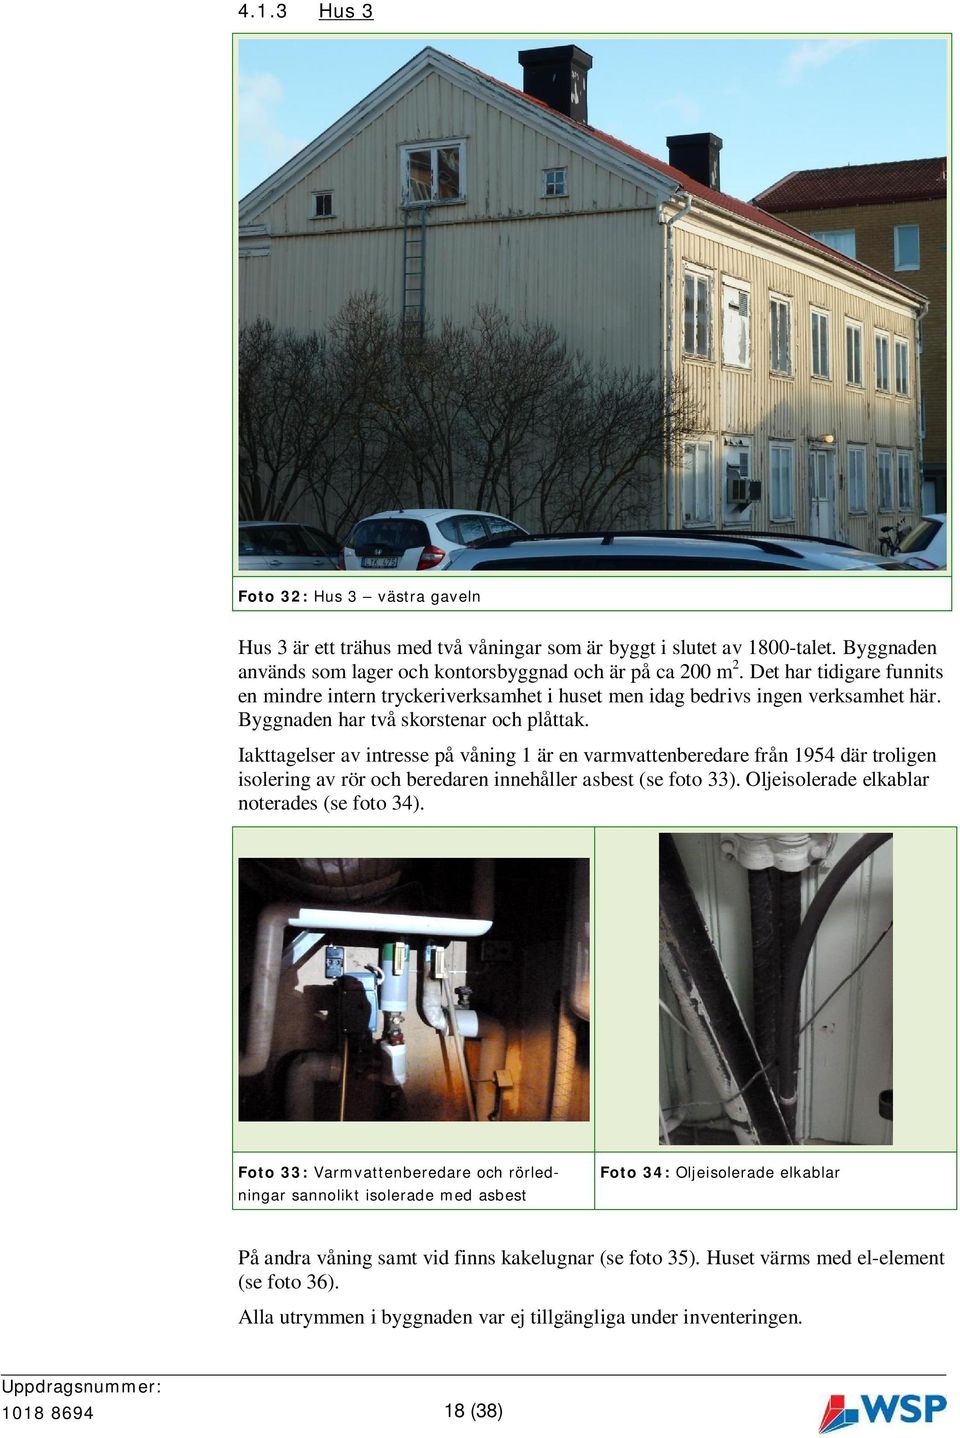 Iakttagelser av intresse på våning 1 är en varmvattenberedare från 1954 där troligen isolering av rör och beredaren innehåller asbest (se foto 33). Oljeisolerade elkablar noterades (se foto 34).